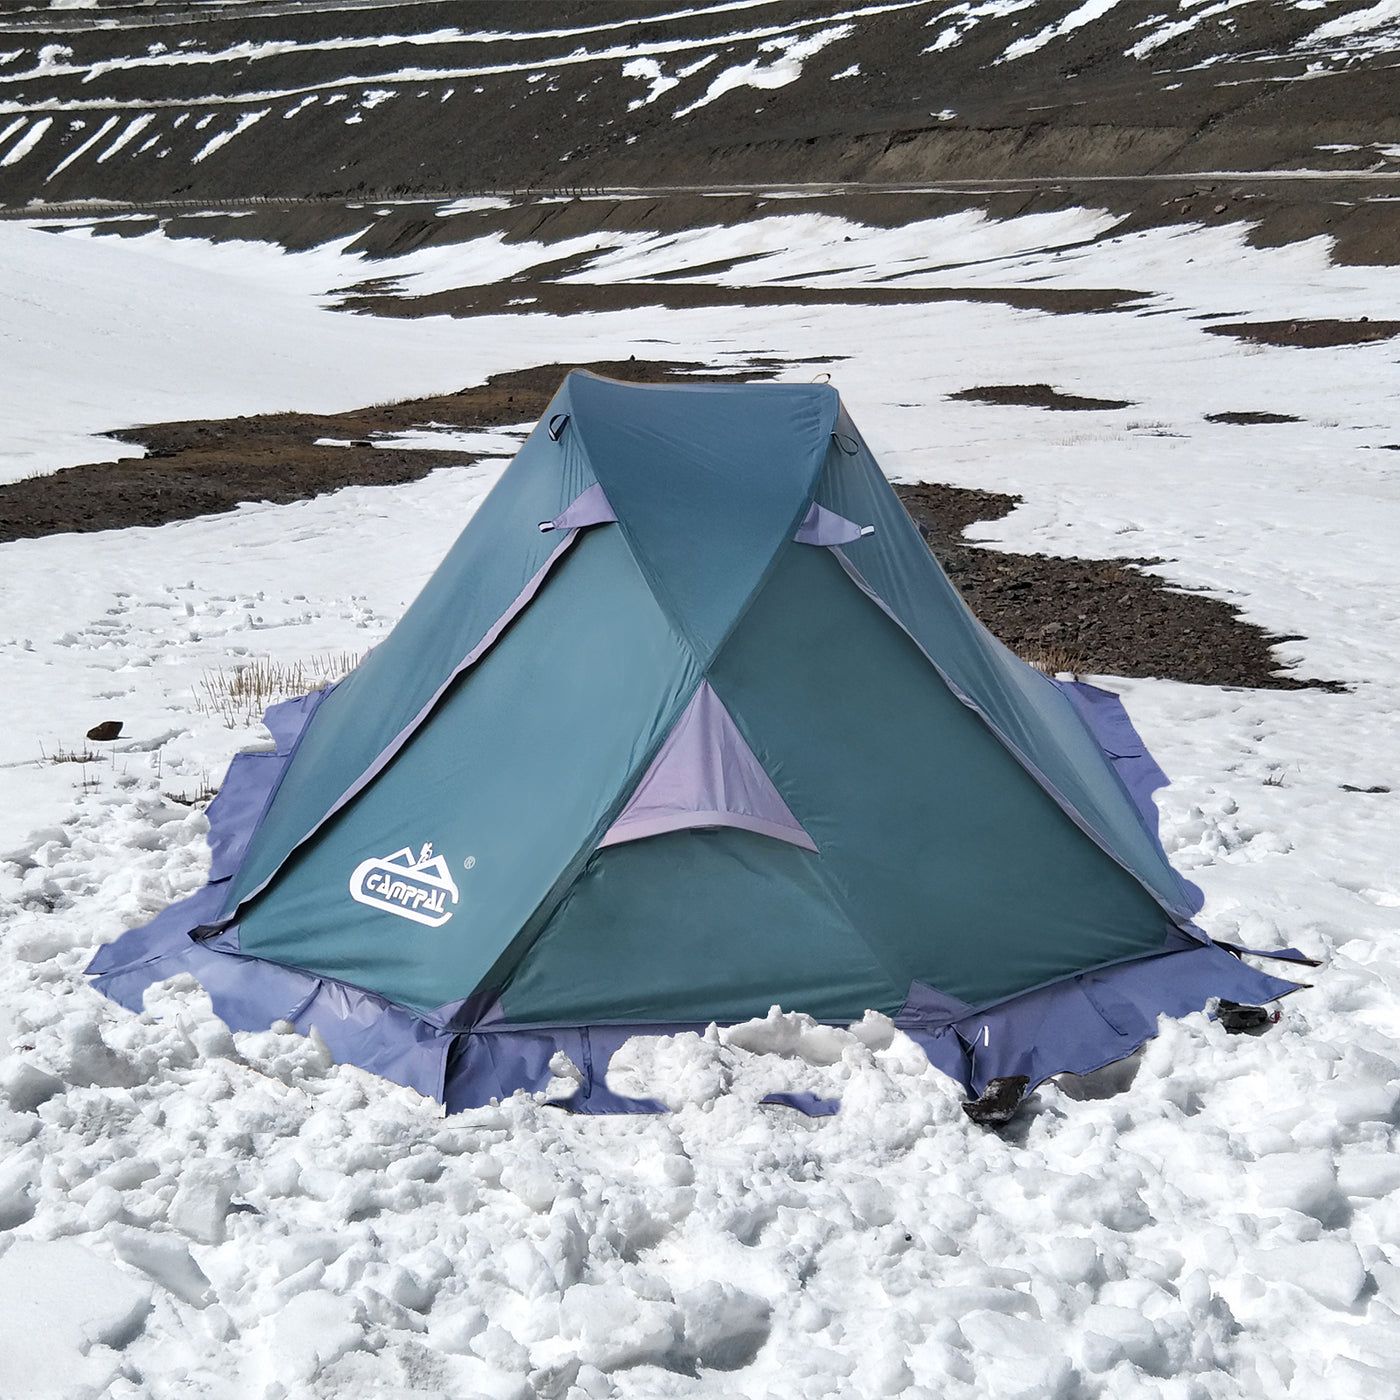 Camppal Professional One Person 4 Seasons Tente de randonnée légère avec eau/pluie/vent/tempête/neige, idéale pour le camping en solo, la randonnée, le trekking